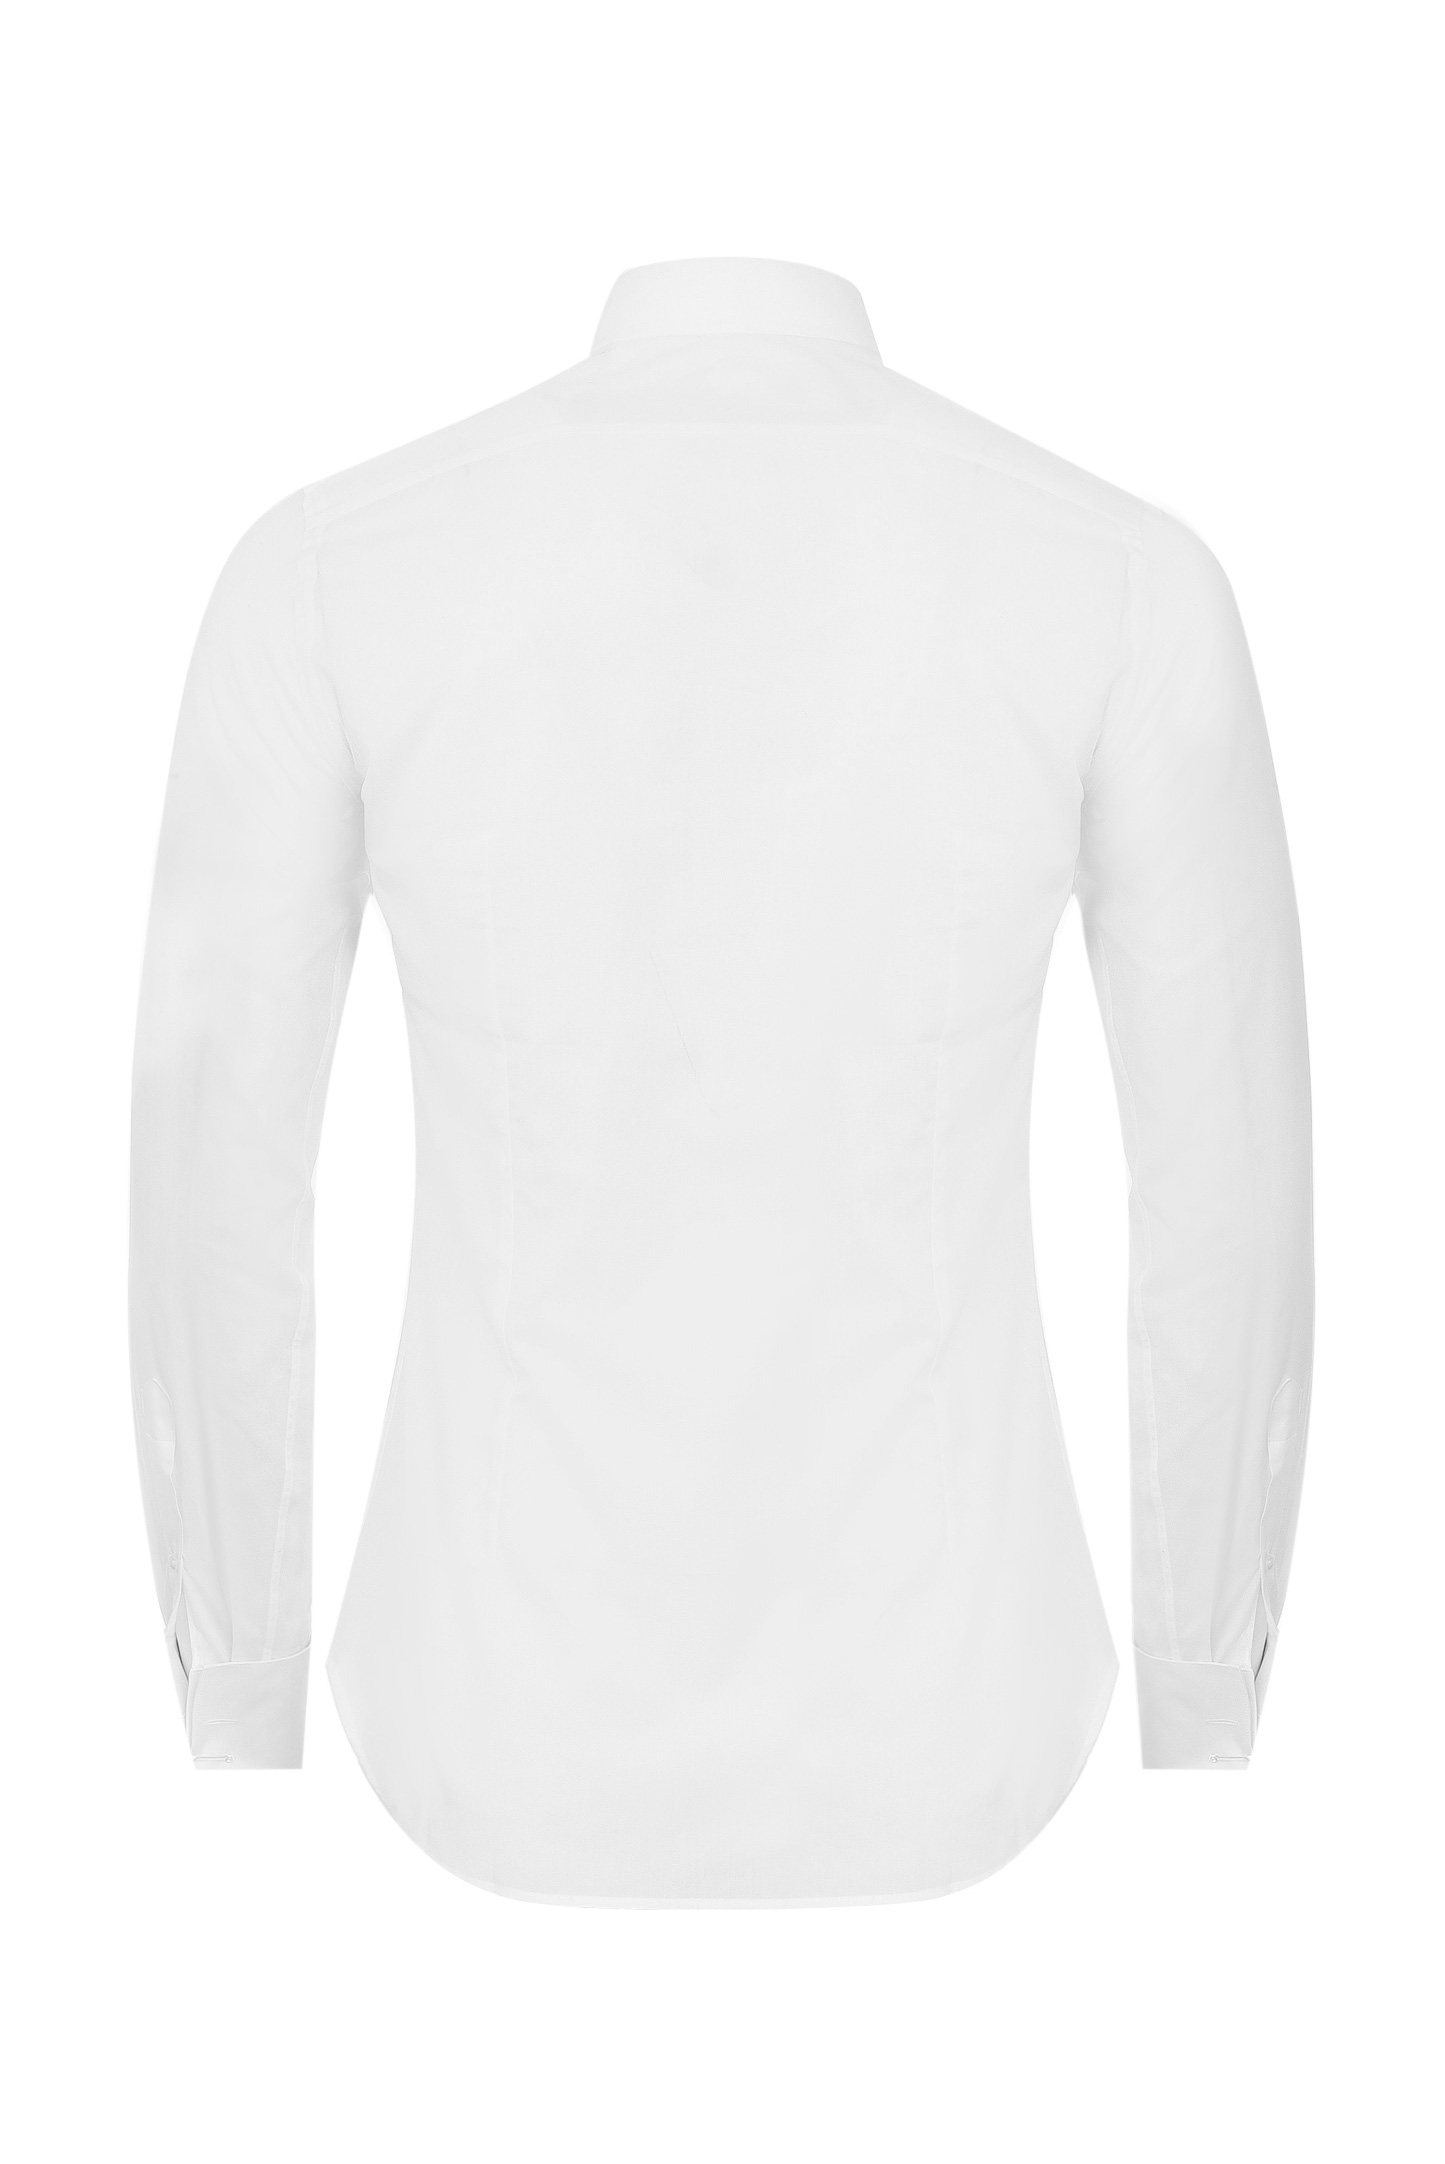 Рубашка CANALI GC00131/001, цвет: Белый, Мужской